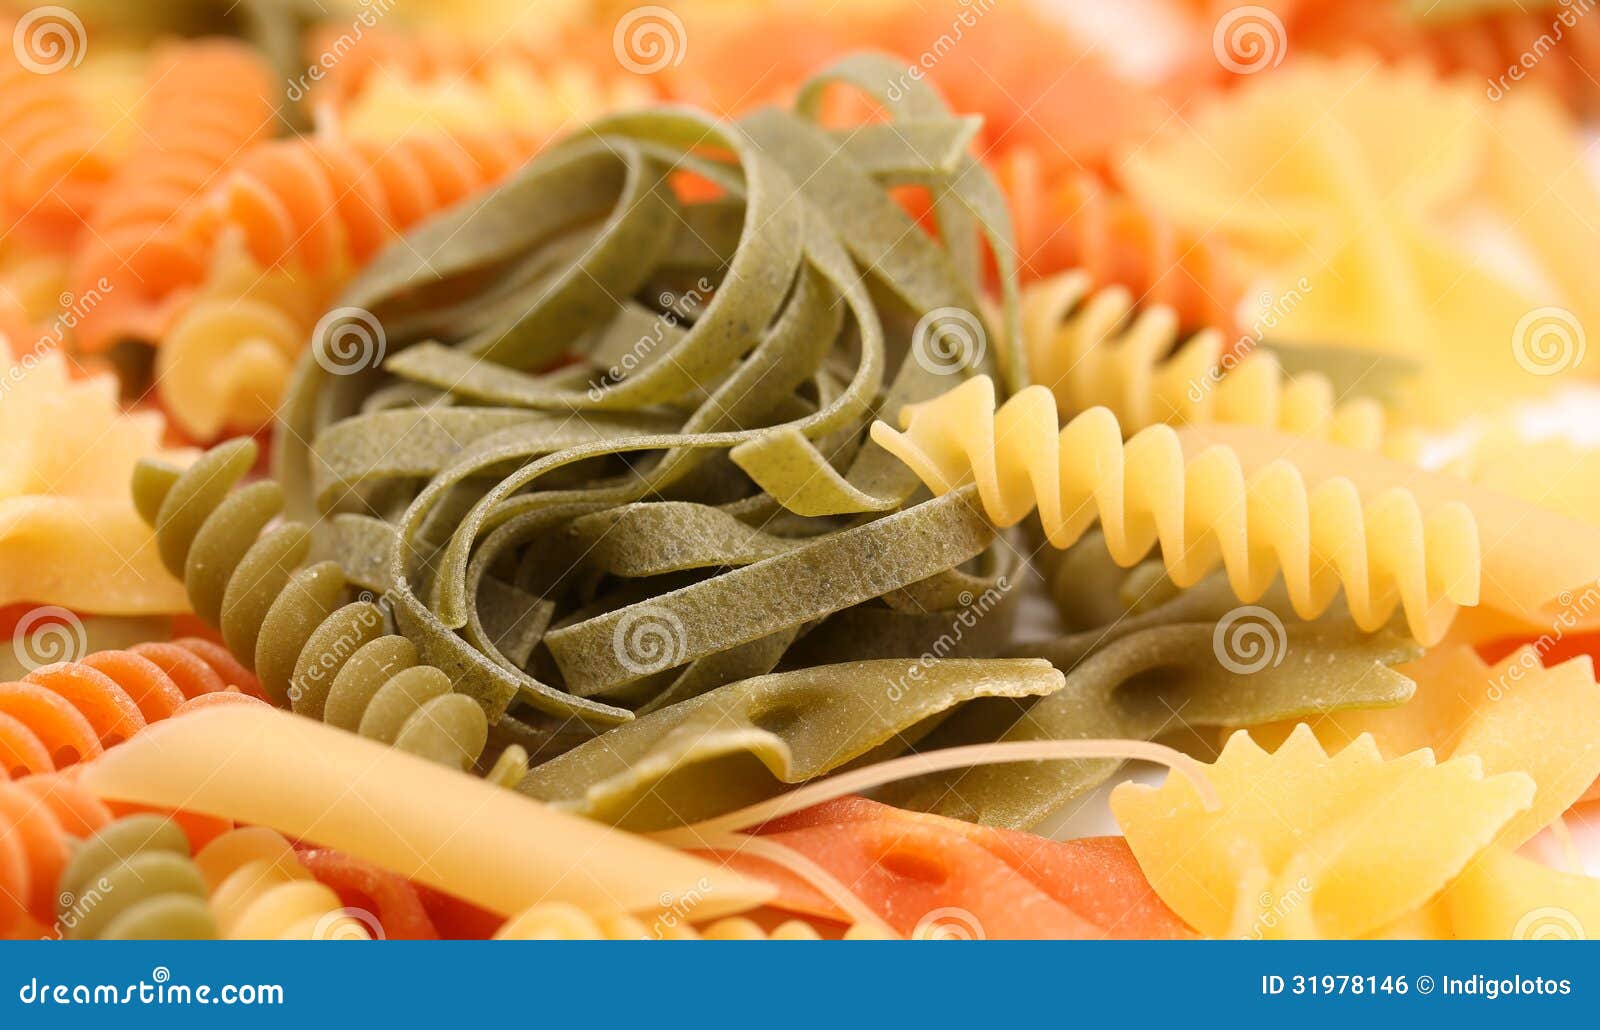 tagliatelle paglia e fieno and different pastas.